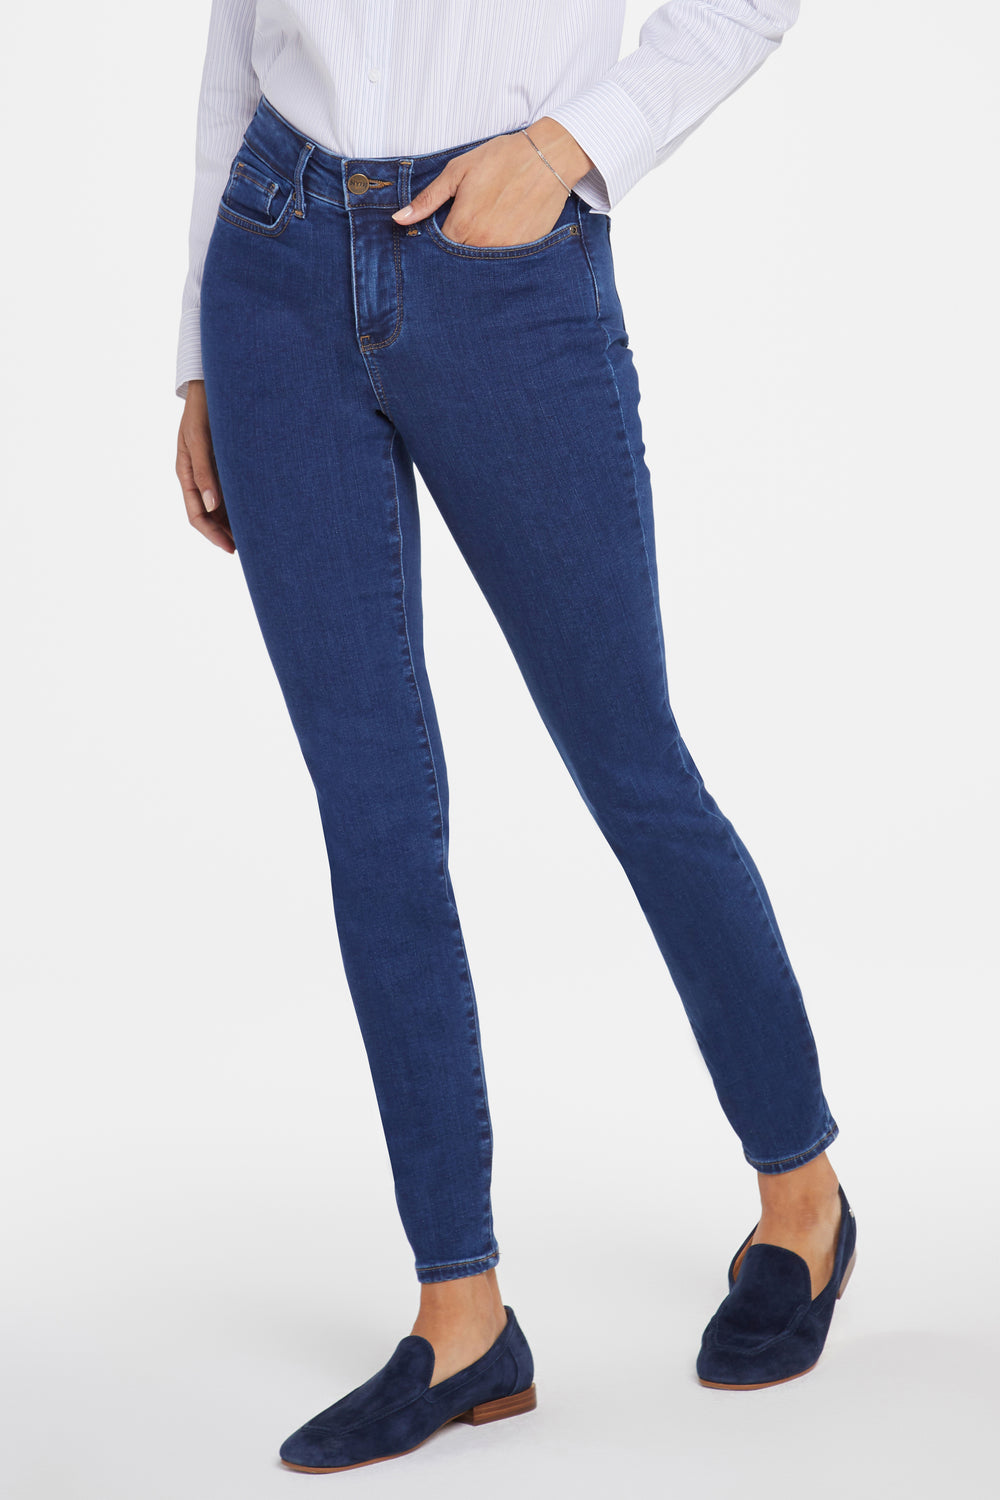 NYDJ Ami skinny jeans (mid-rise, zip)